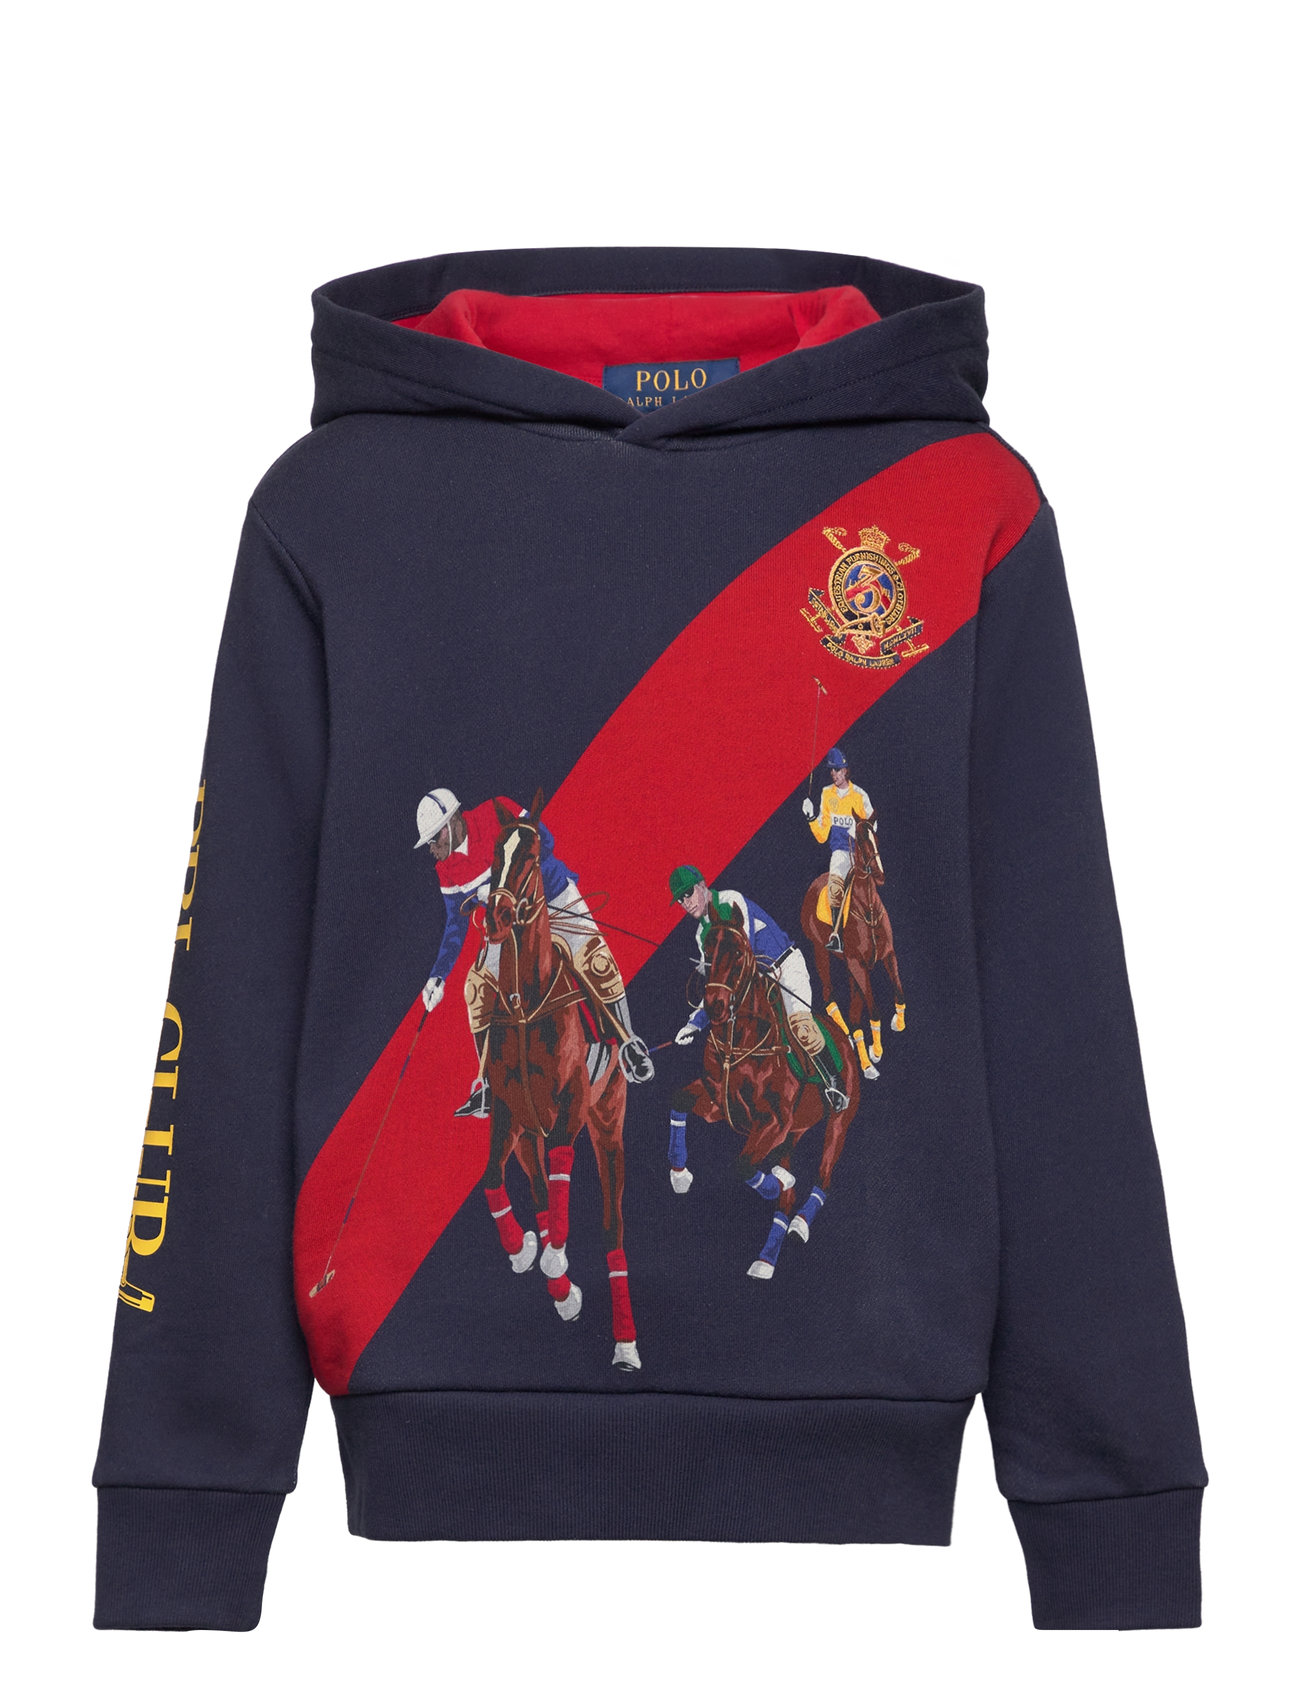 Fleece Graphic Hoodie Tops Sweatshirts & Hoodies Hoodies Navy Ralph Lauren Kids